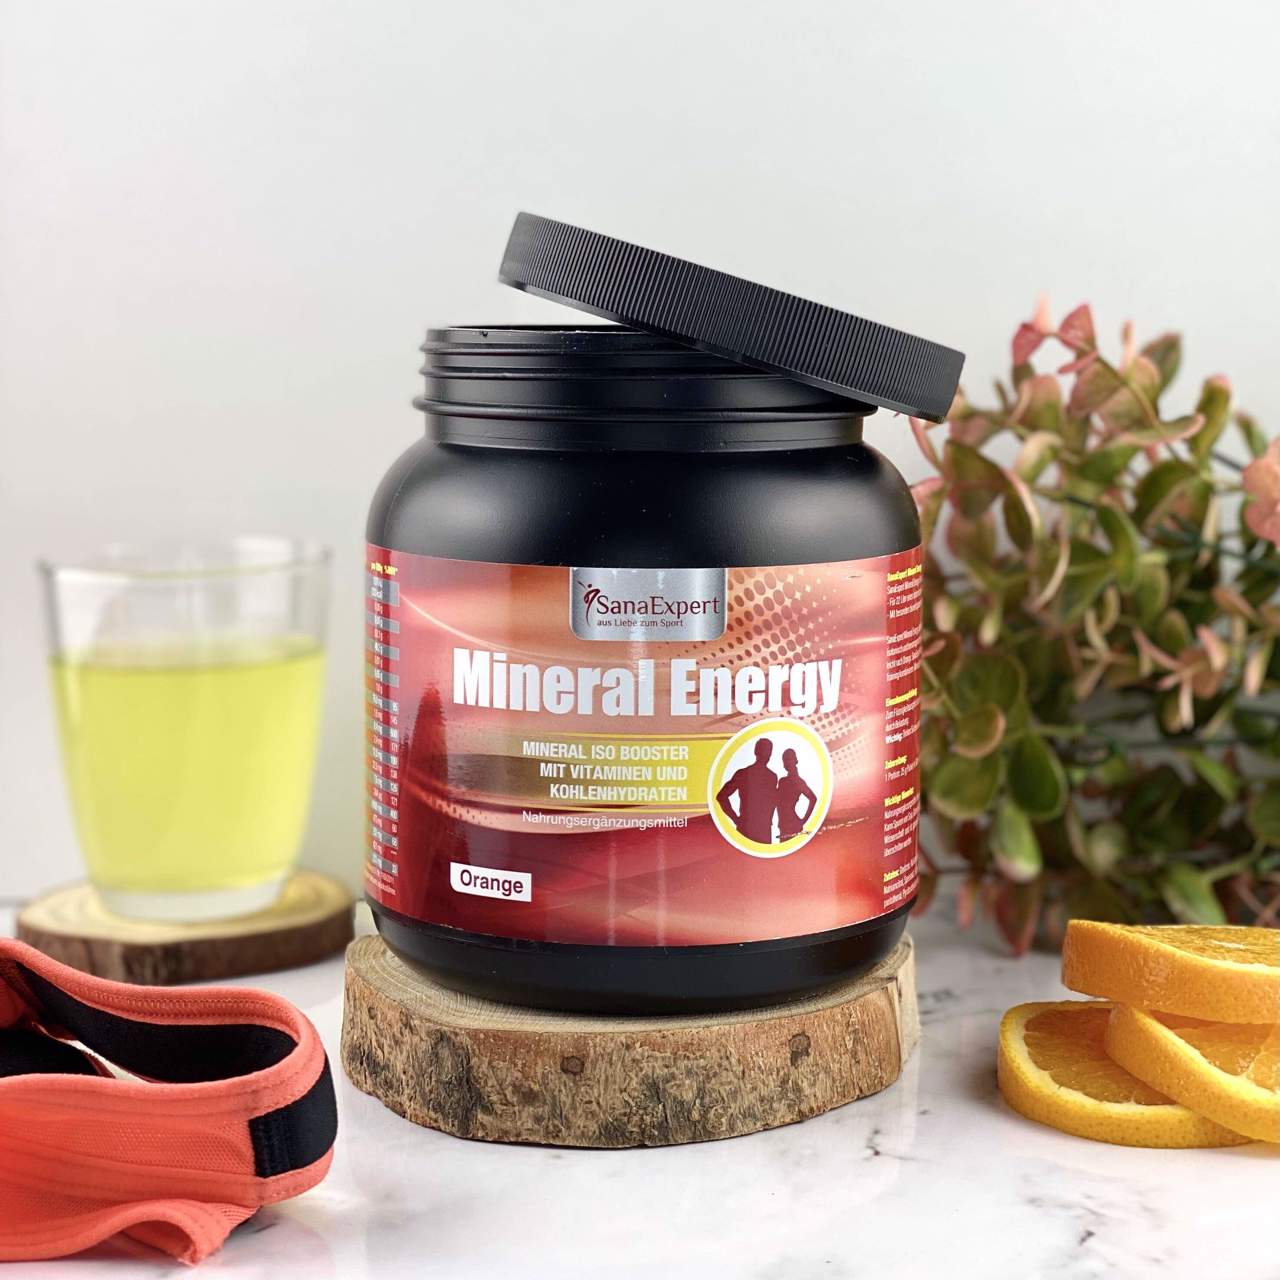 SanaExpert Mineral Energy energy drink con fascia per allenamento e arance